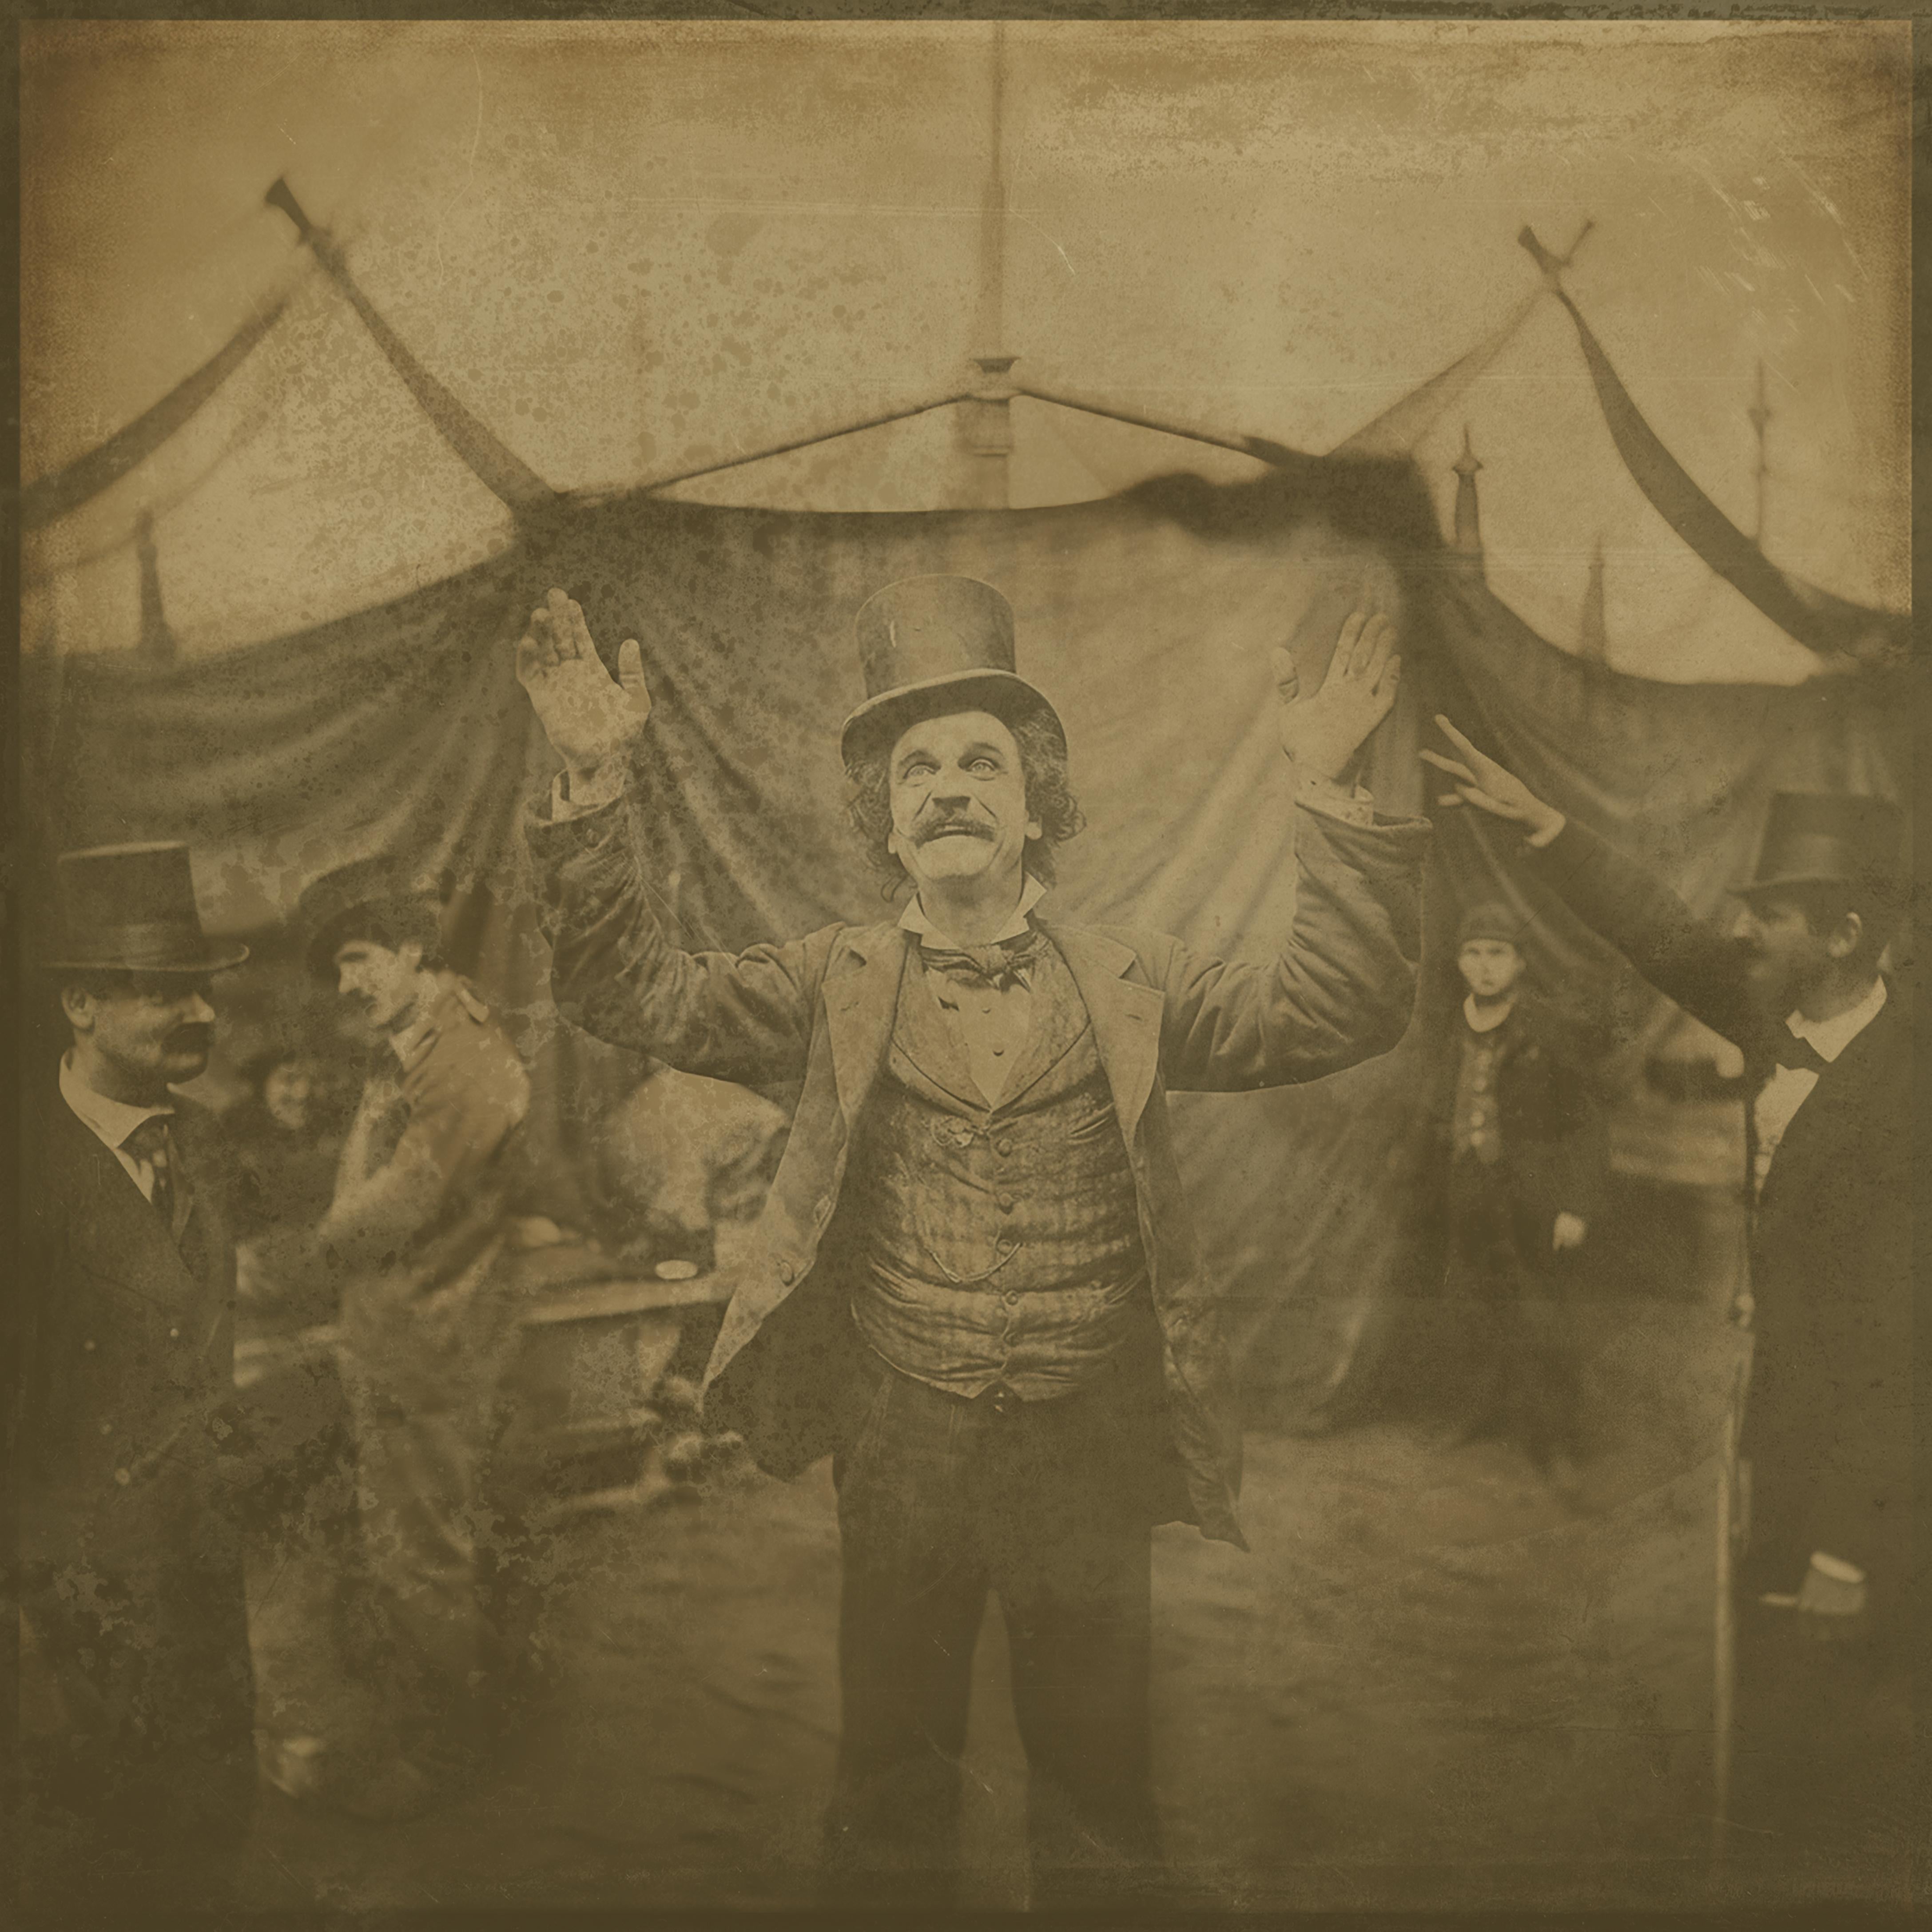 quartet von Zirkusbildern  -exotische Daguerreotypie-Reproduktionen gerahmt (Surrealismus), Photograph, von FPA Francis Pavy Artist